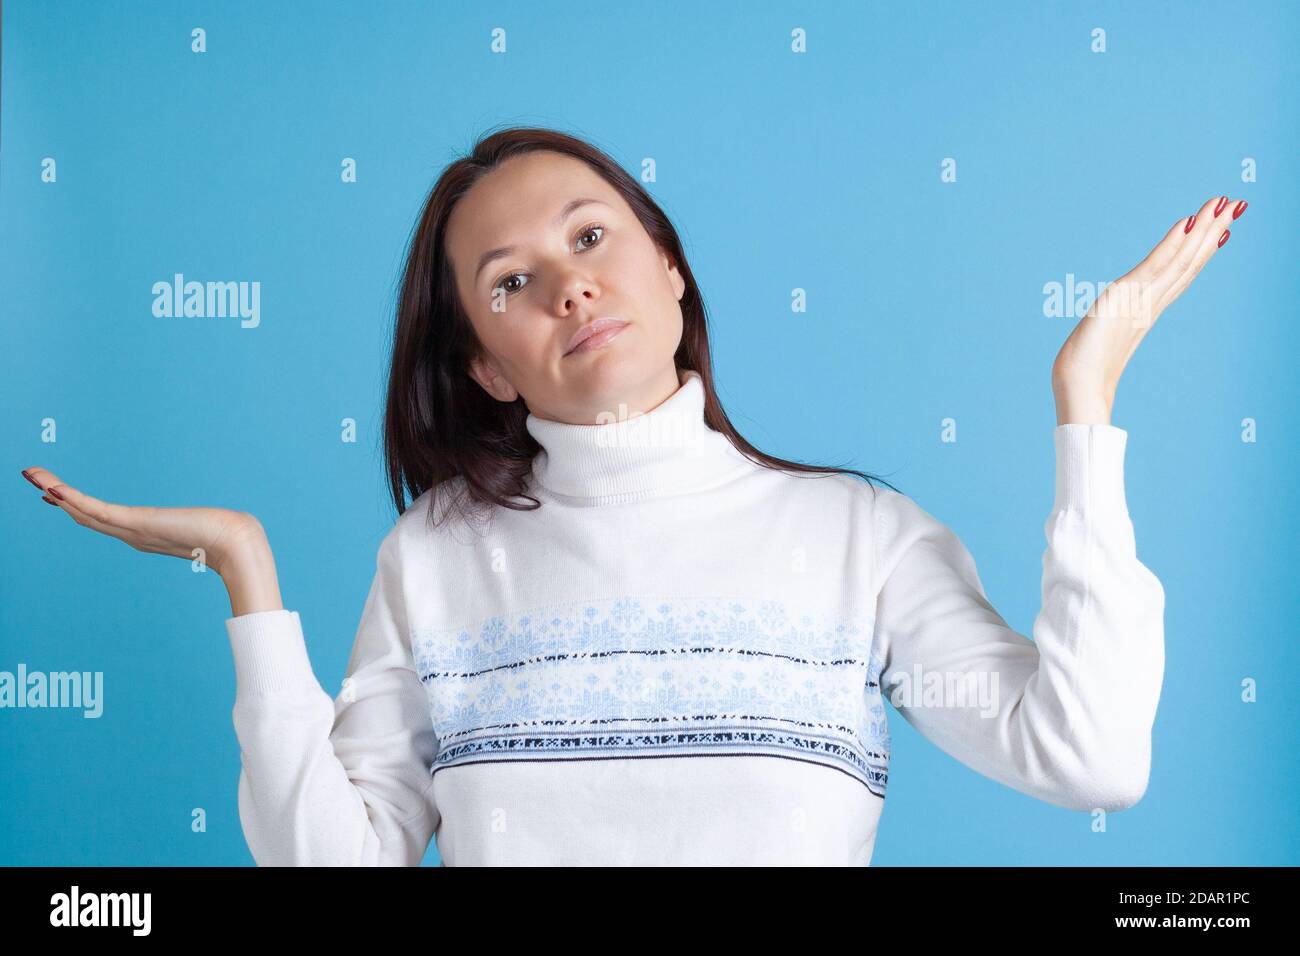 Enttäuscht spreizt die zweifelende asiatische junge Frau im Pullover ihre Hände isoliert auf blauem Hintergrund Stockfoto